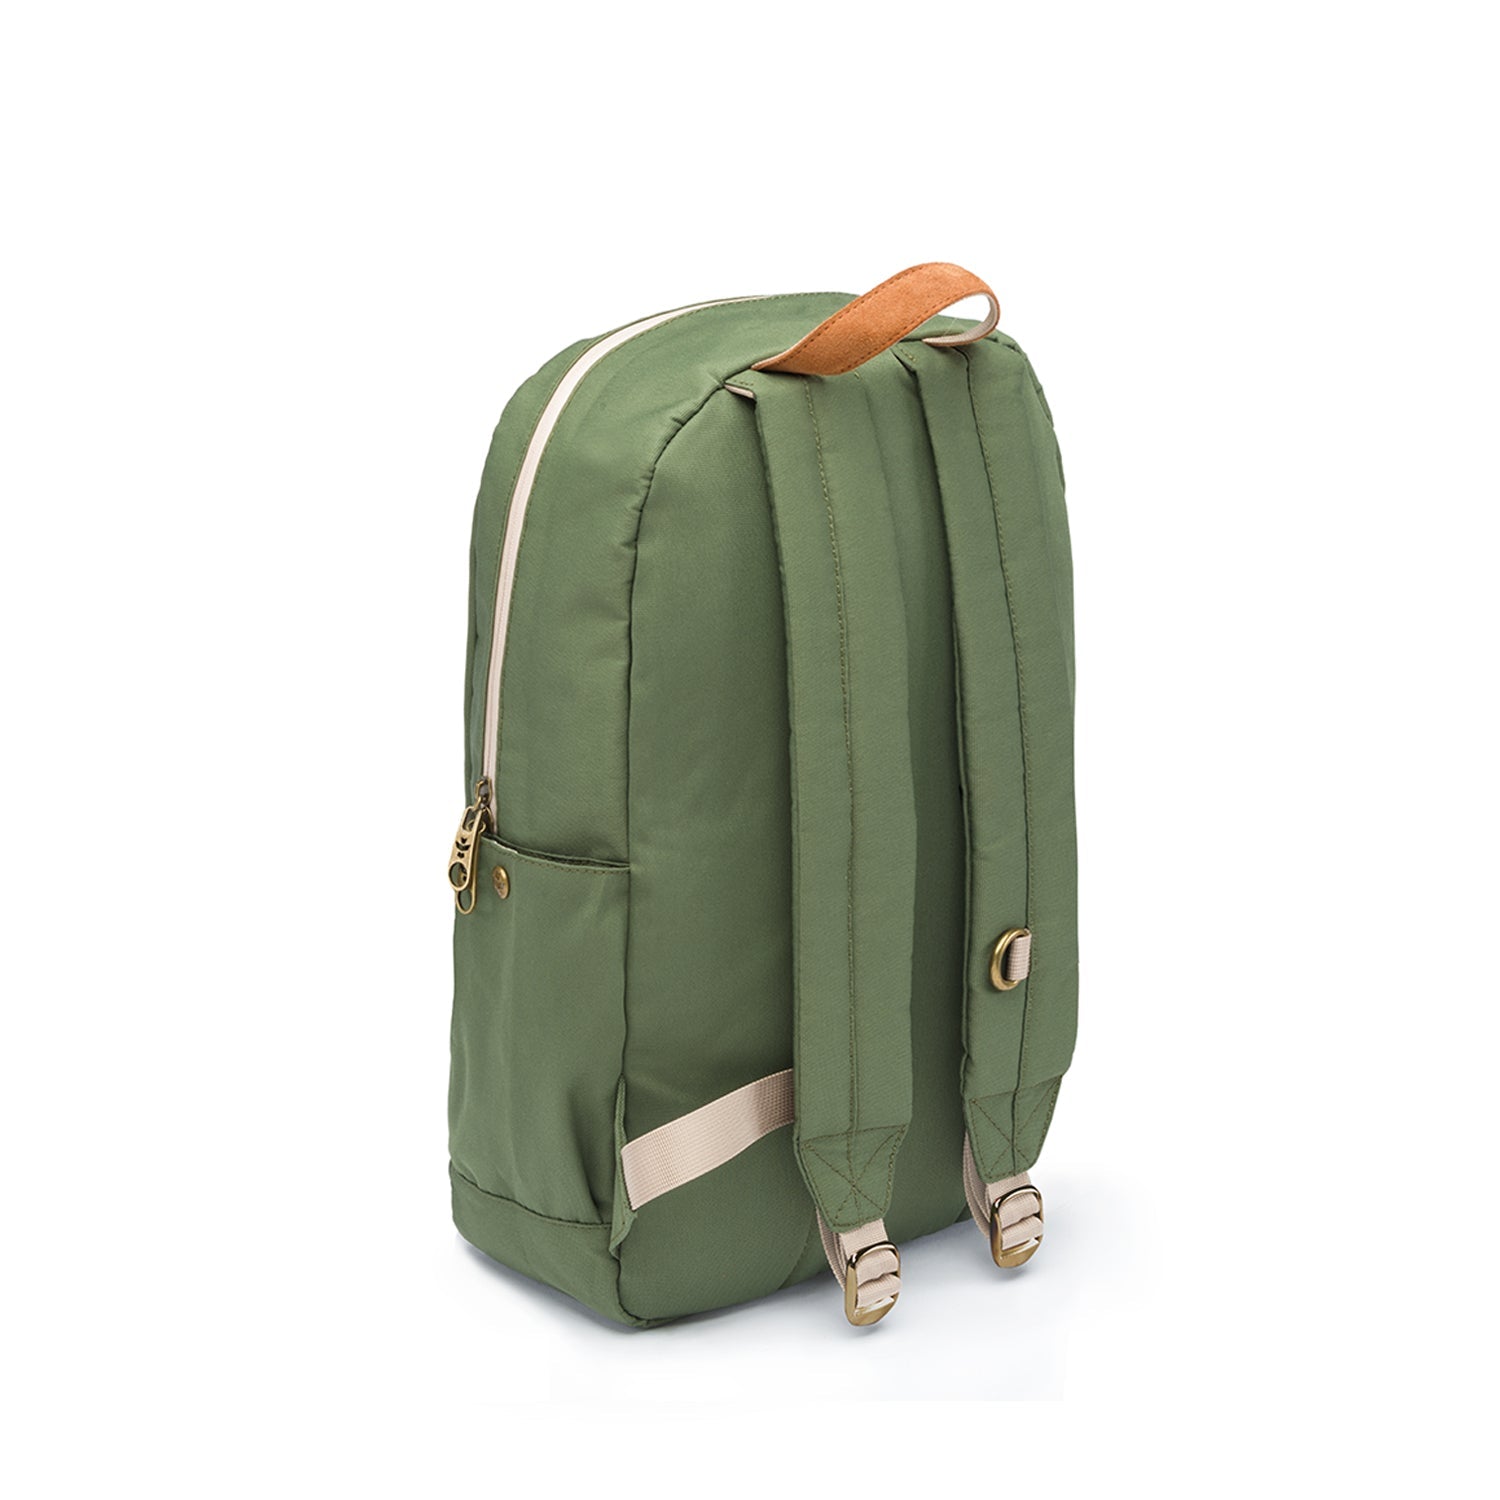 Revelry Explorer - Backpack